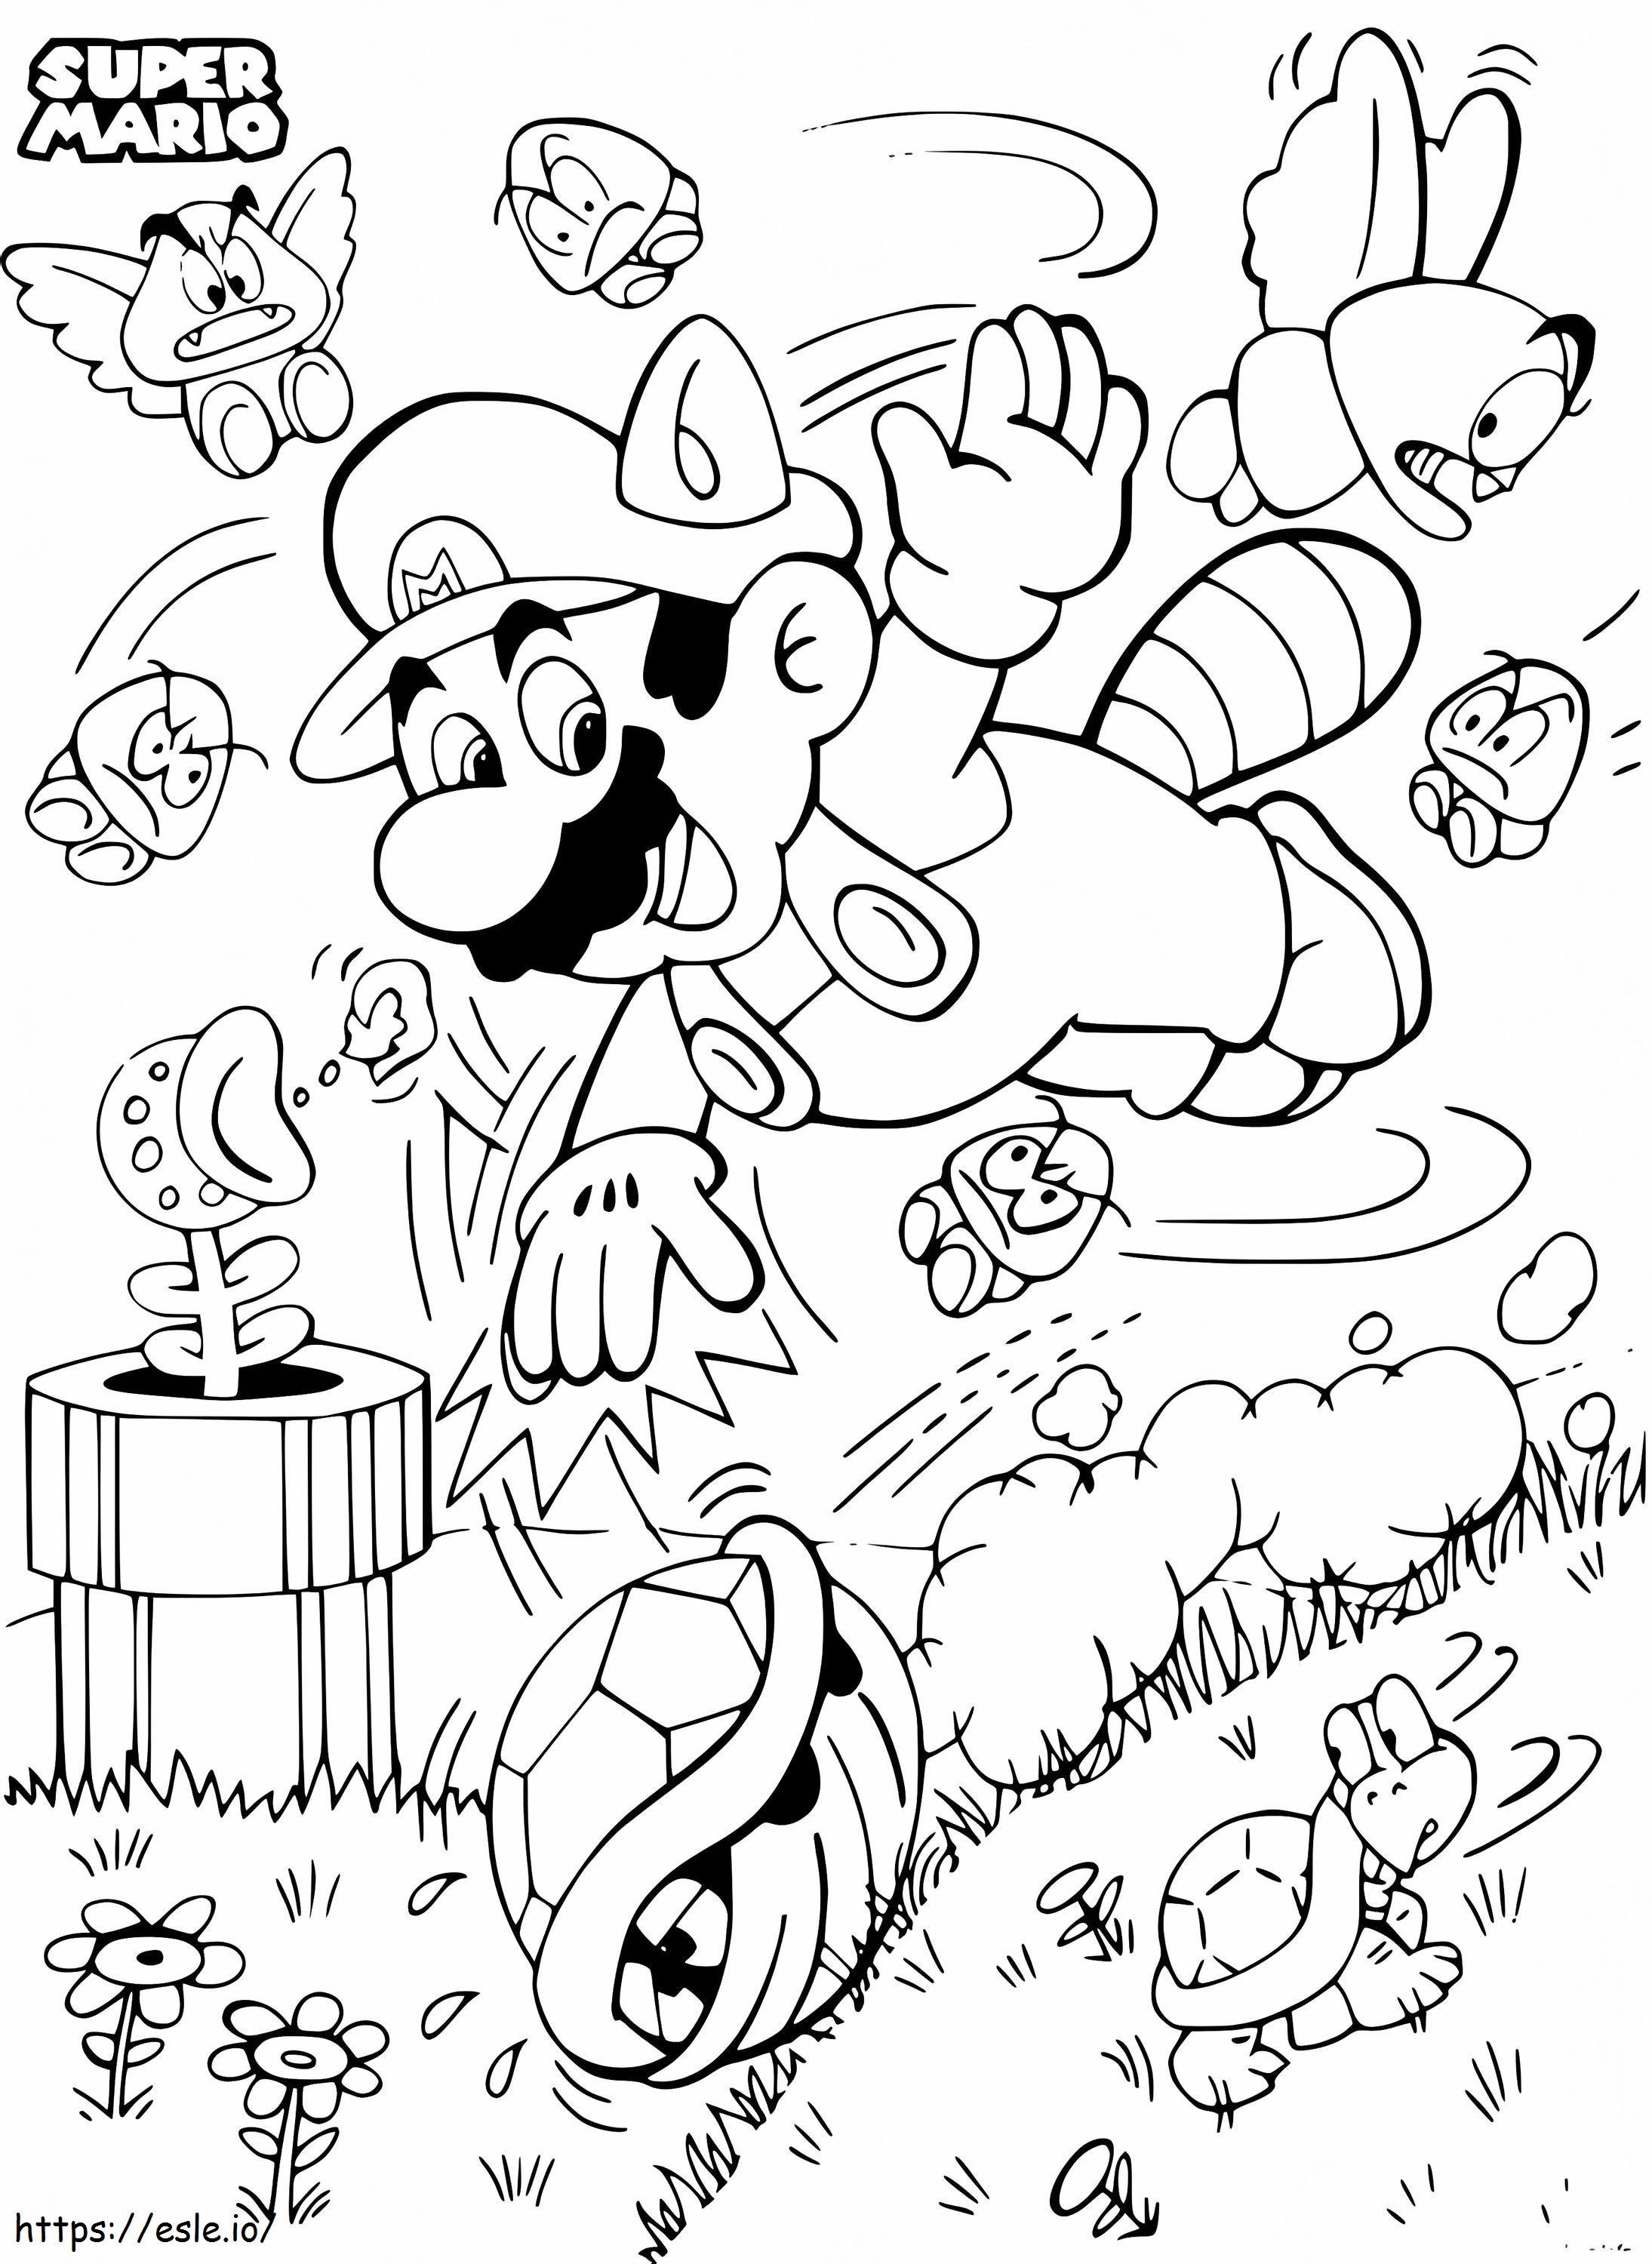 Super Mario Bros kolorowanka